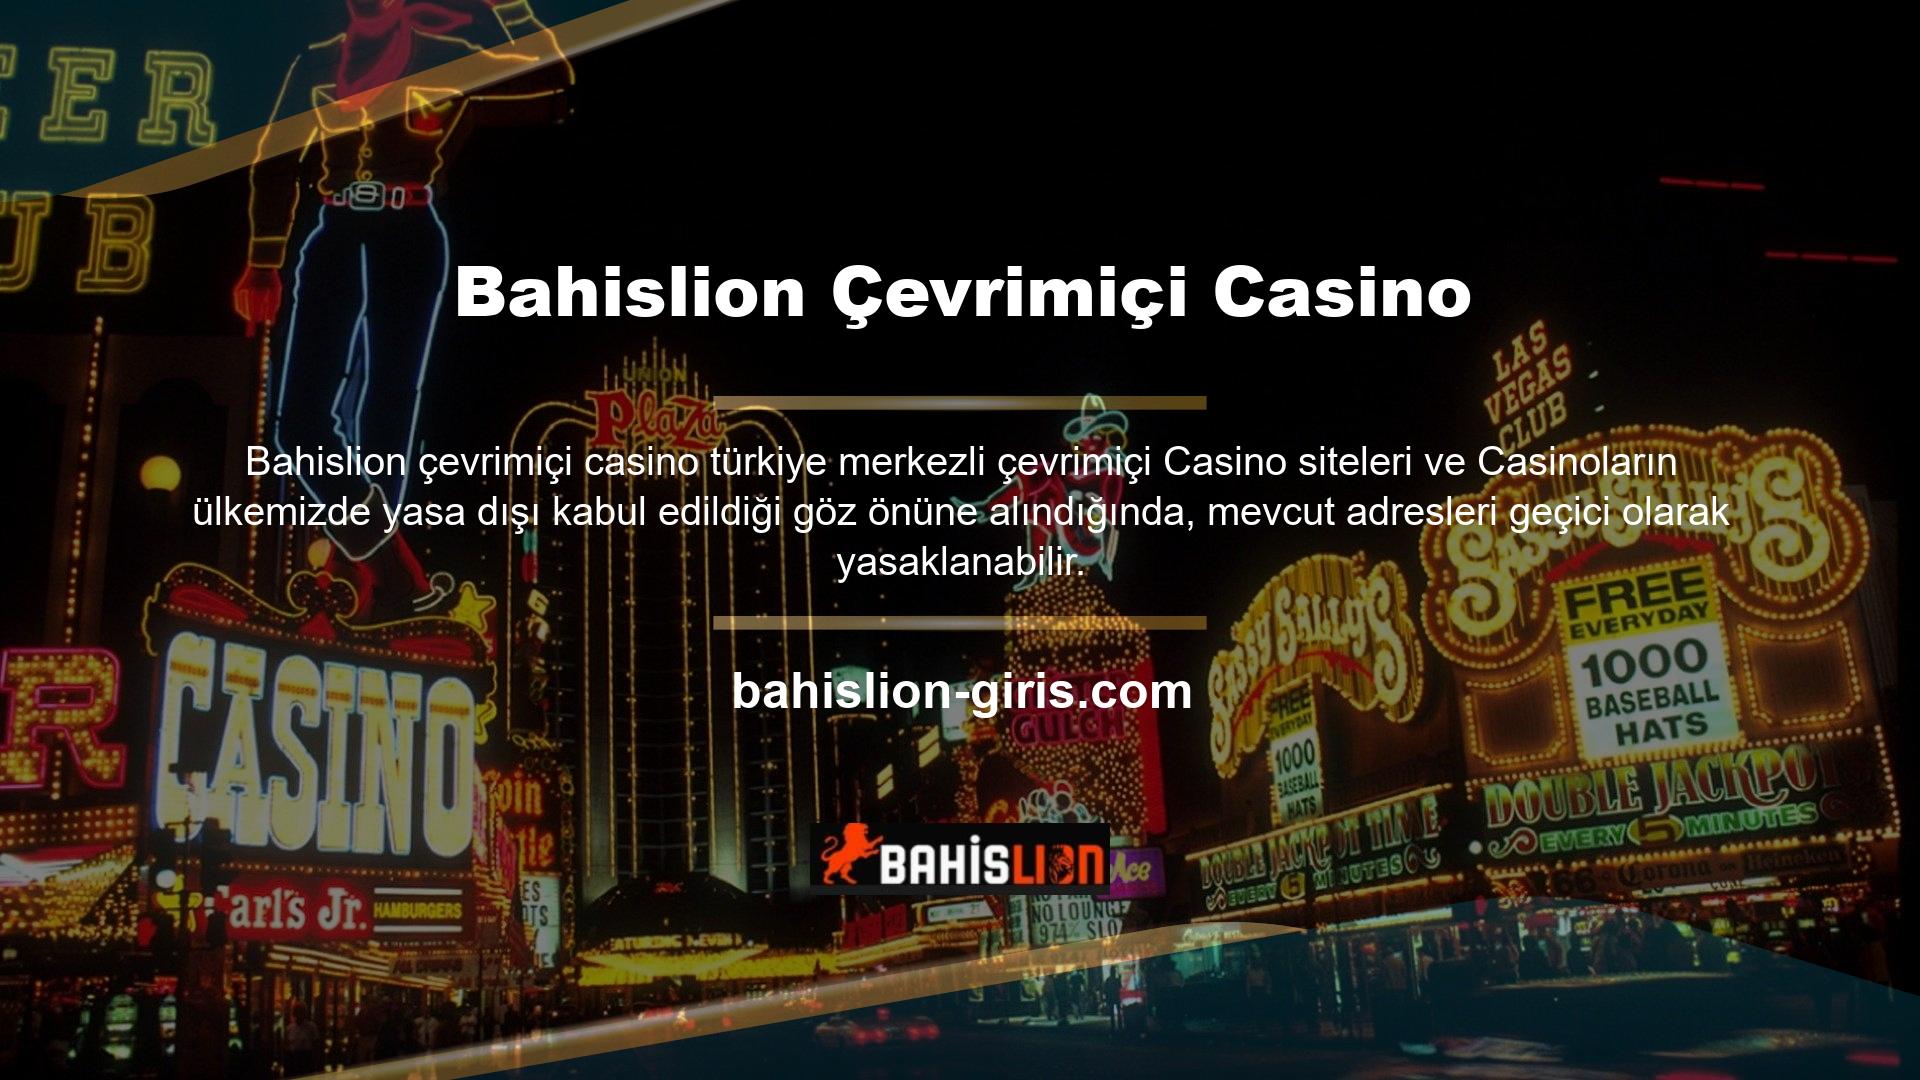 BTK ayrıca Bahislion mevcut giriş sayfasını da engelledi